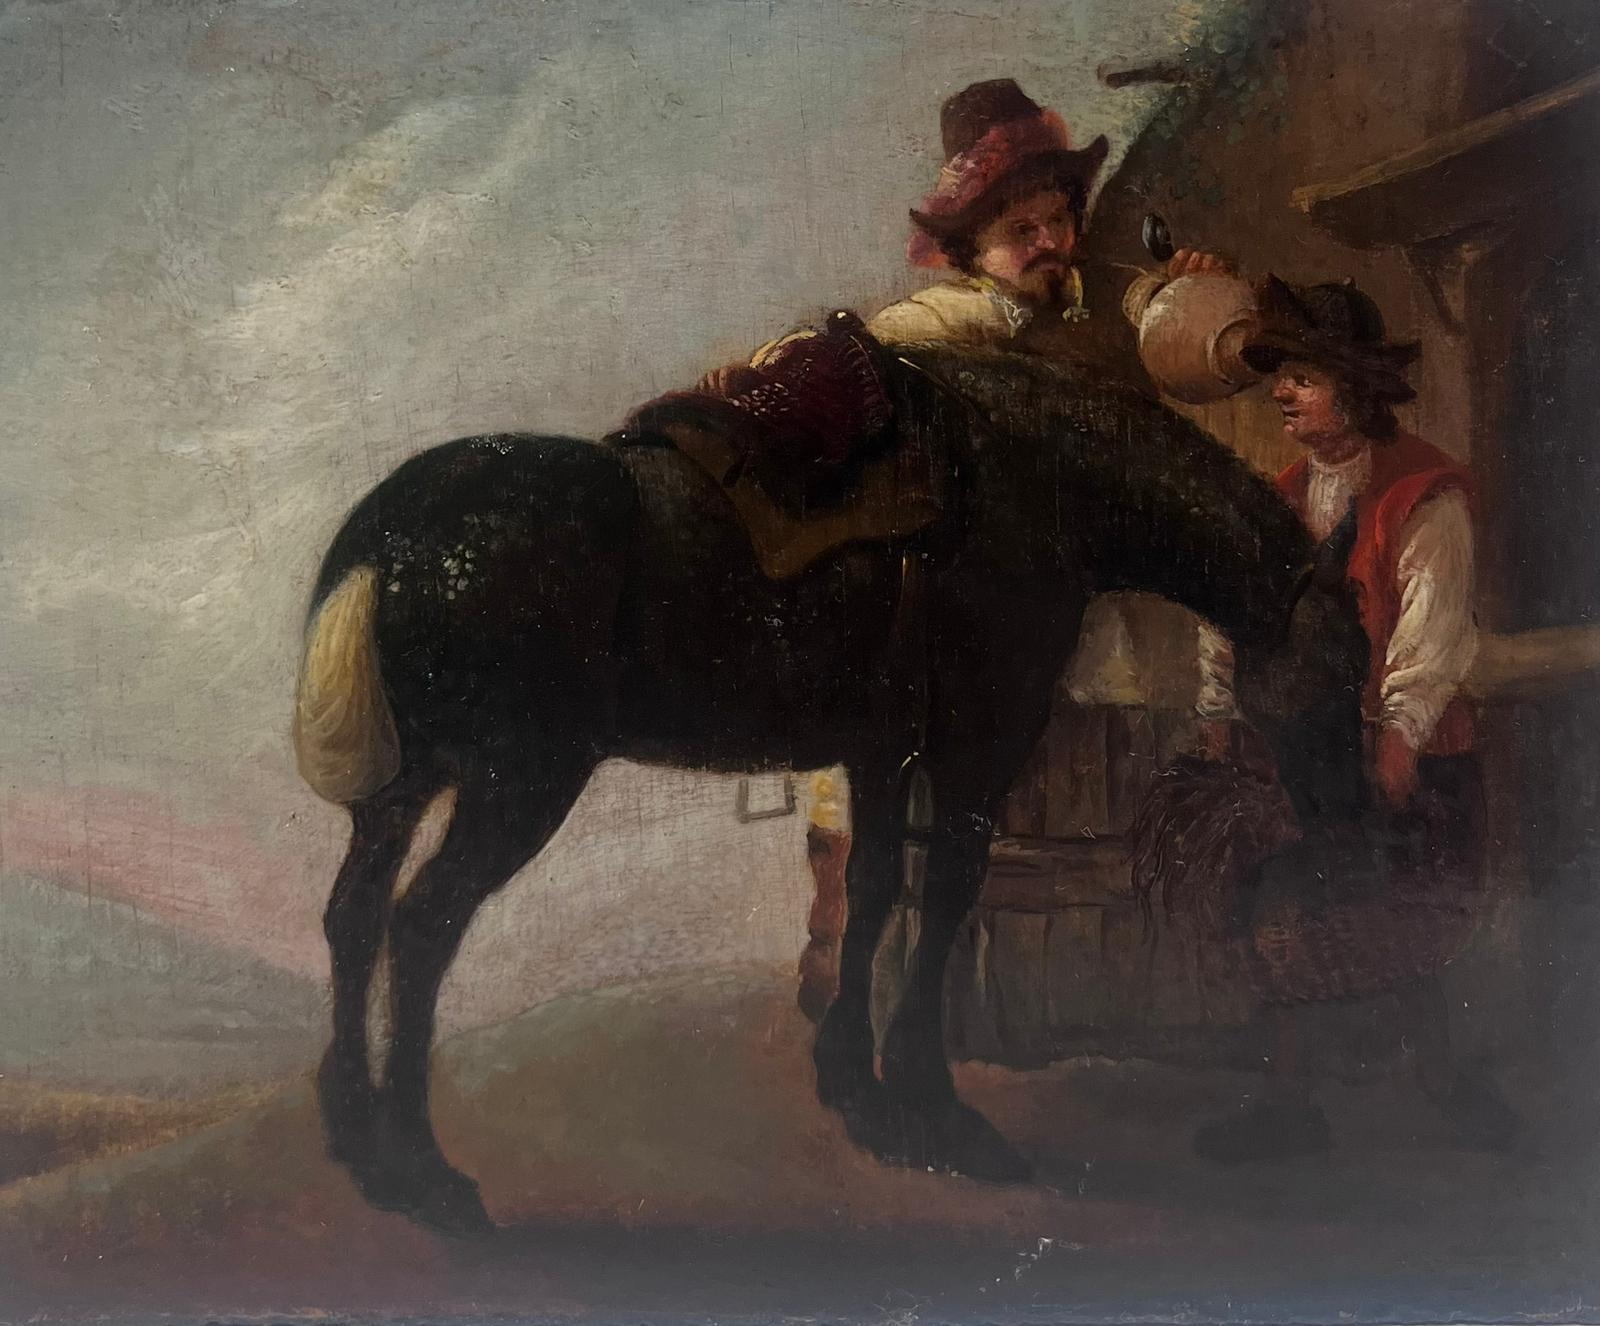 Belle peinture à l'huile hollandaise du 17e siècle sur panneau de bois Cheval et personnages au repos - Painting de Dutch 17th Century